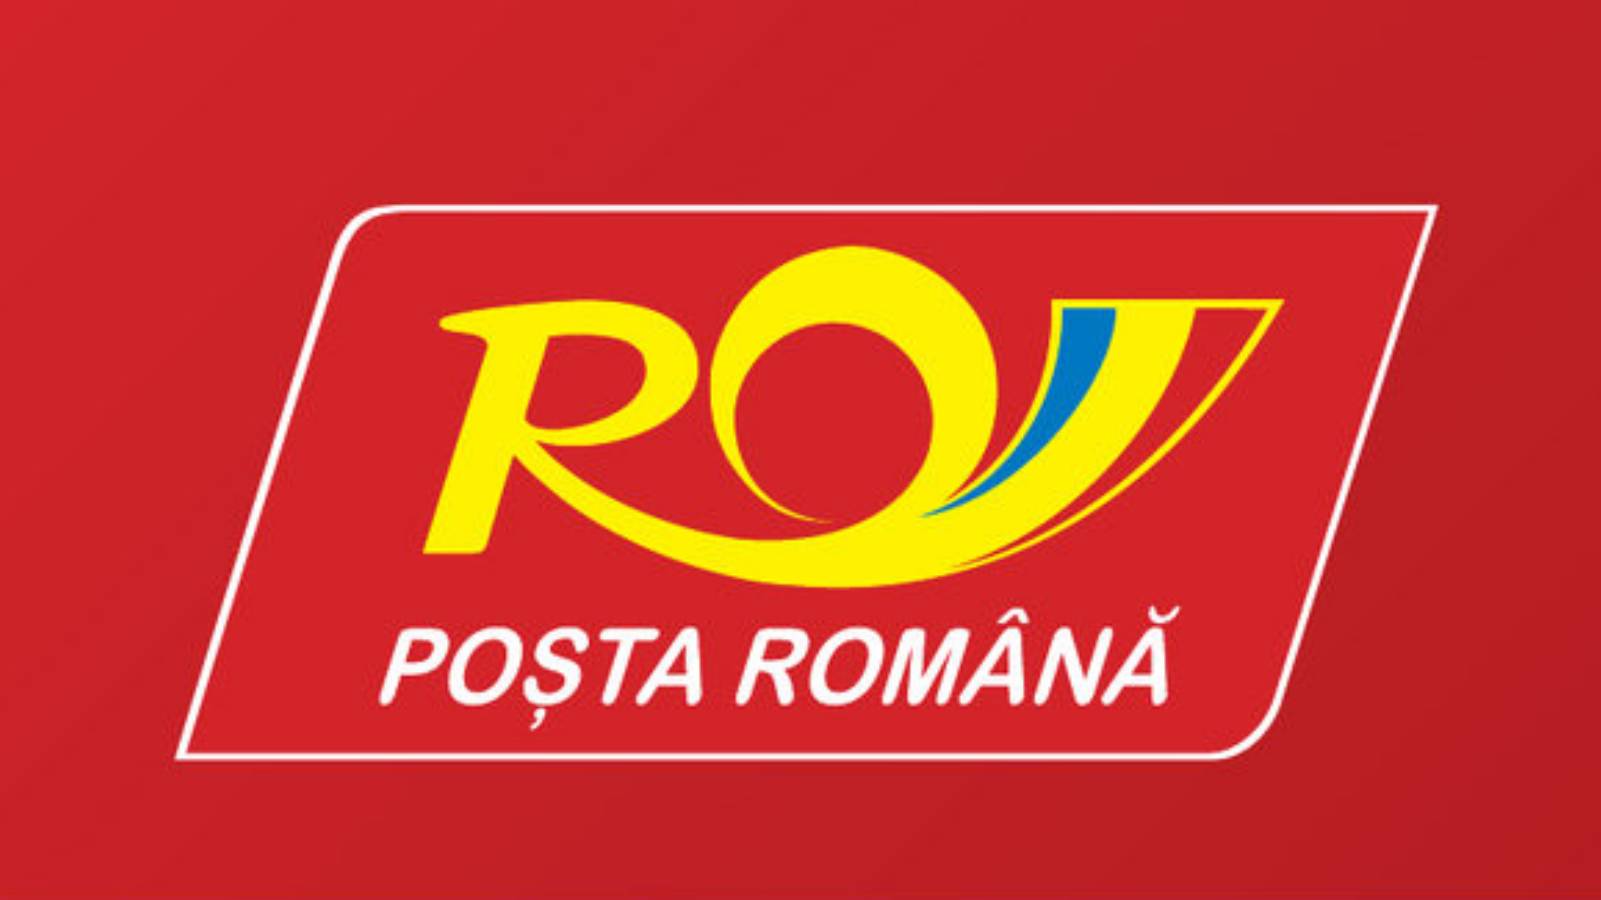 Postal del correo rumano